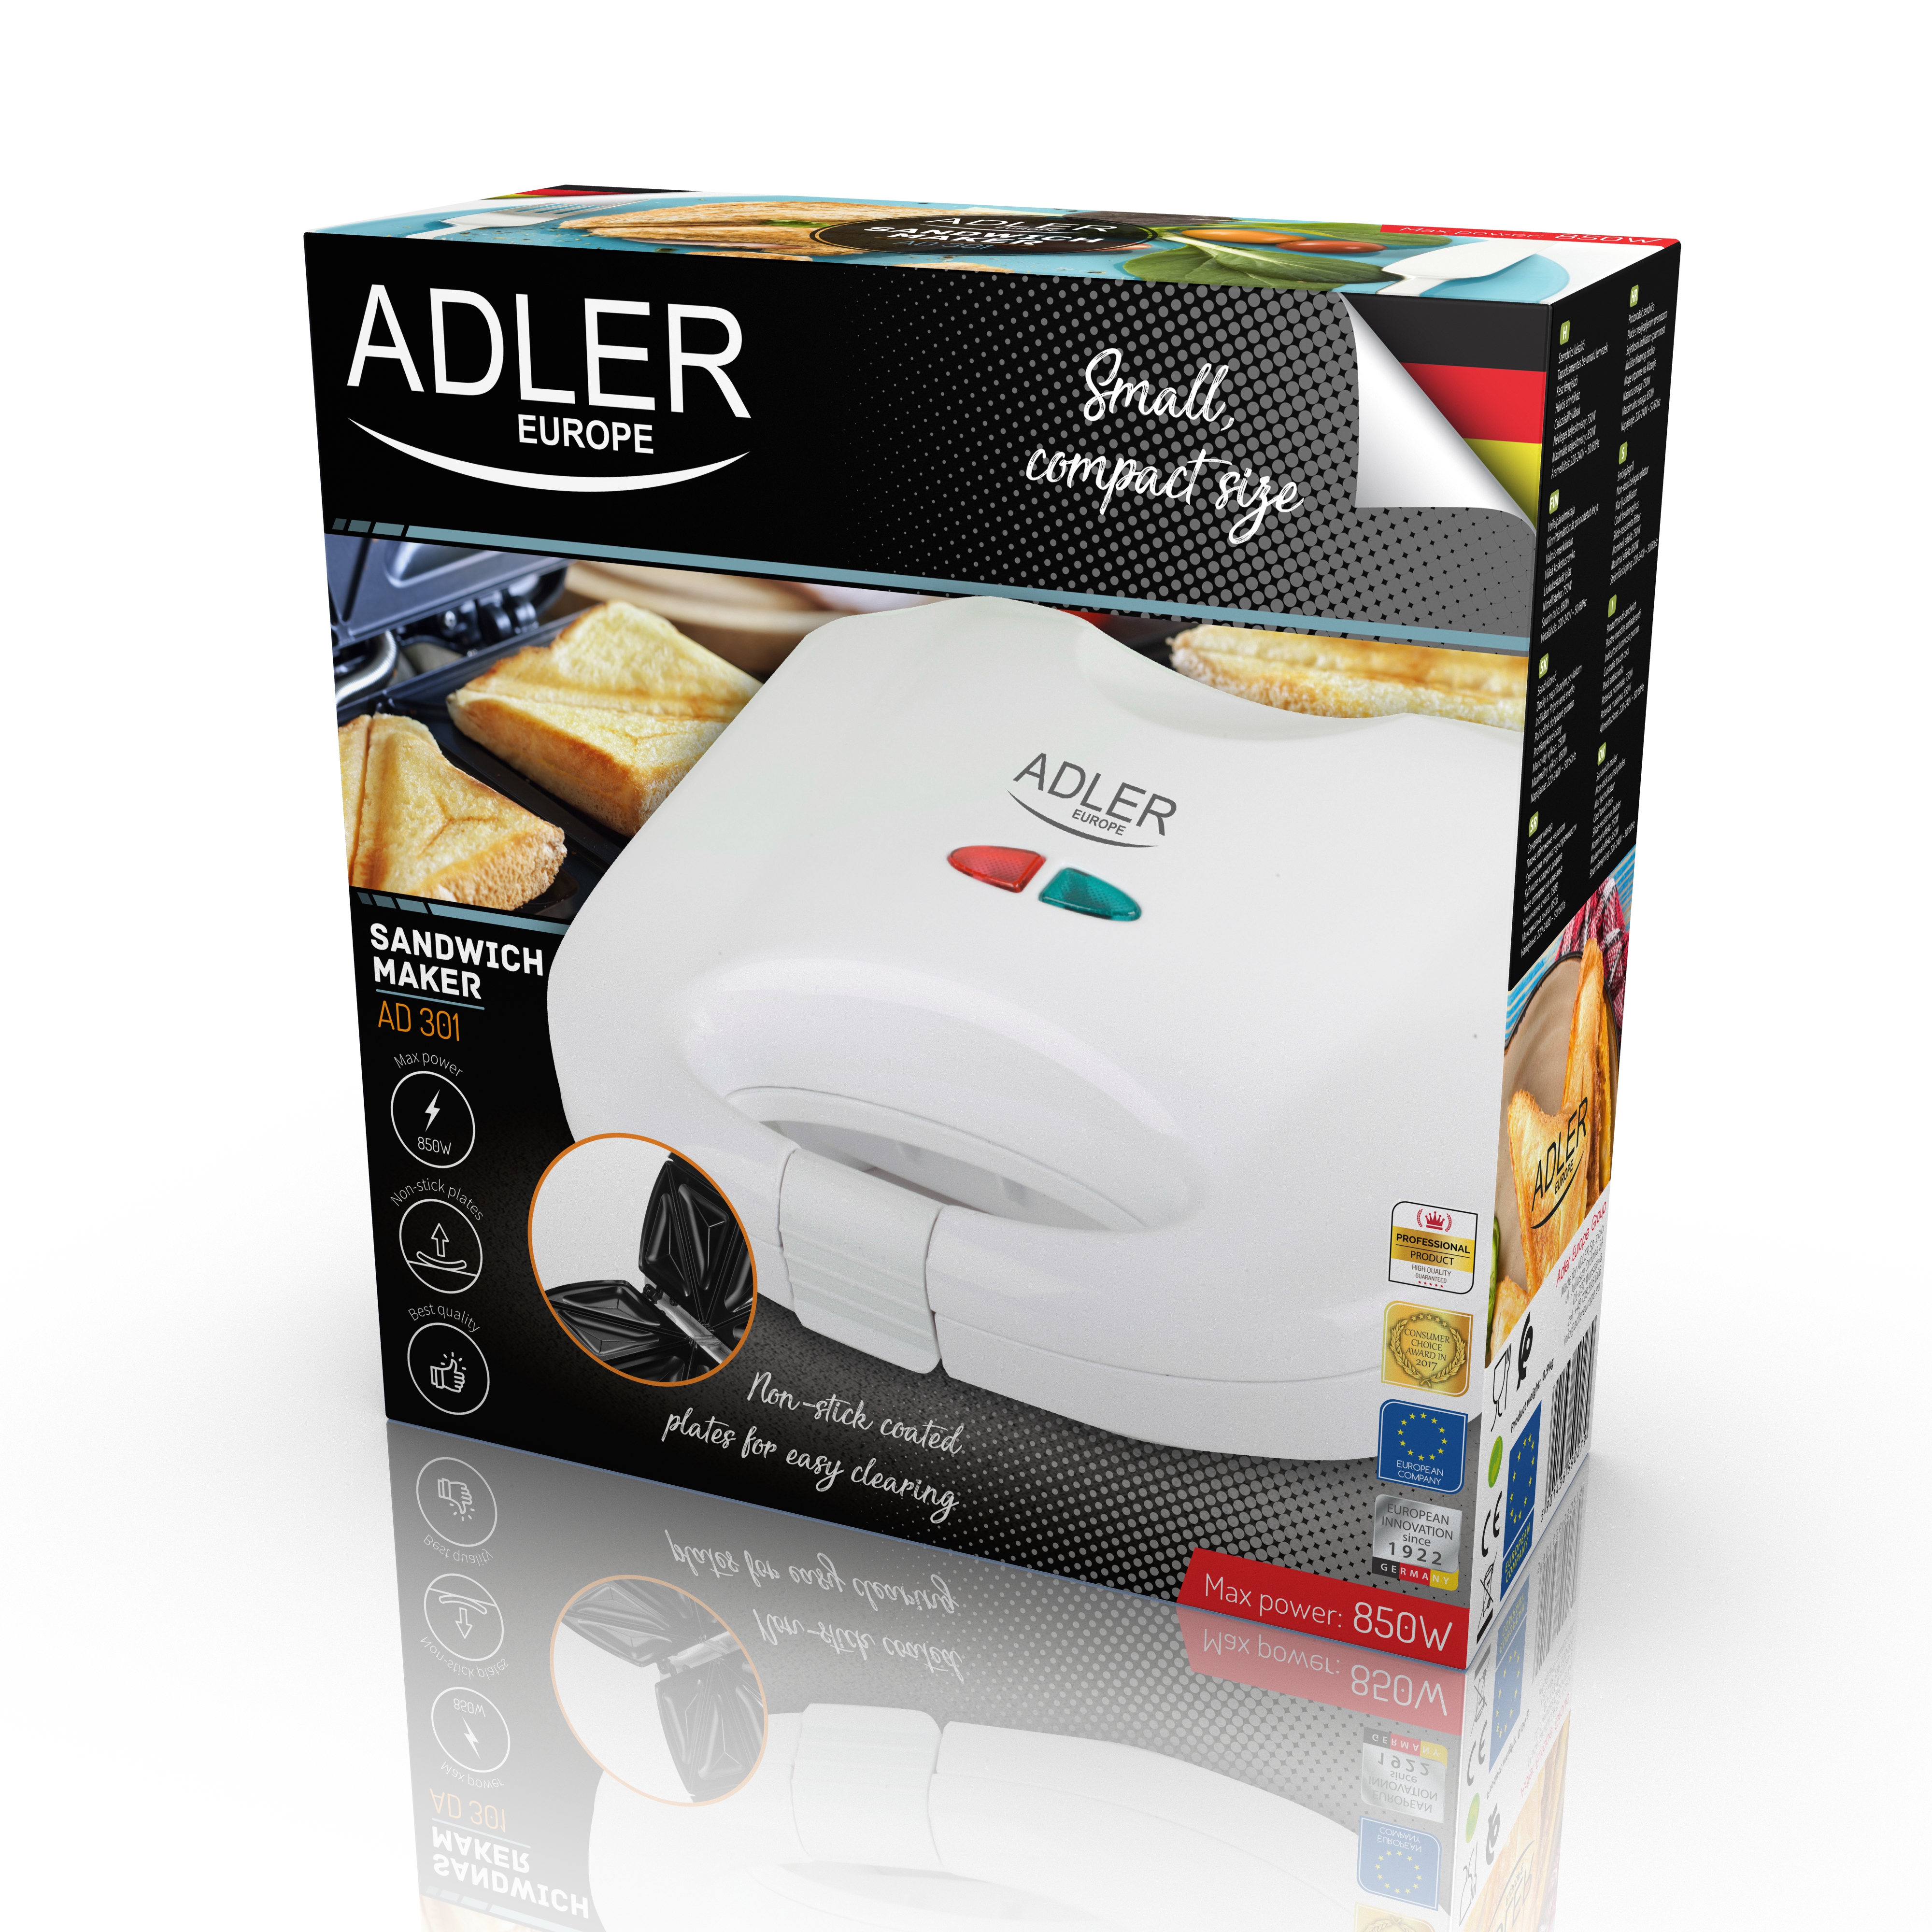 700/ W Adler AD 301/ Sandwich Maker